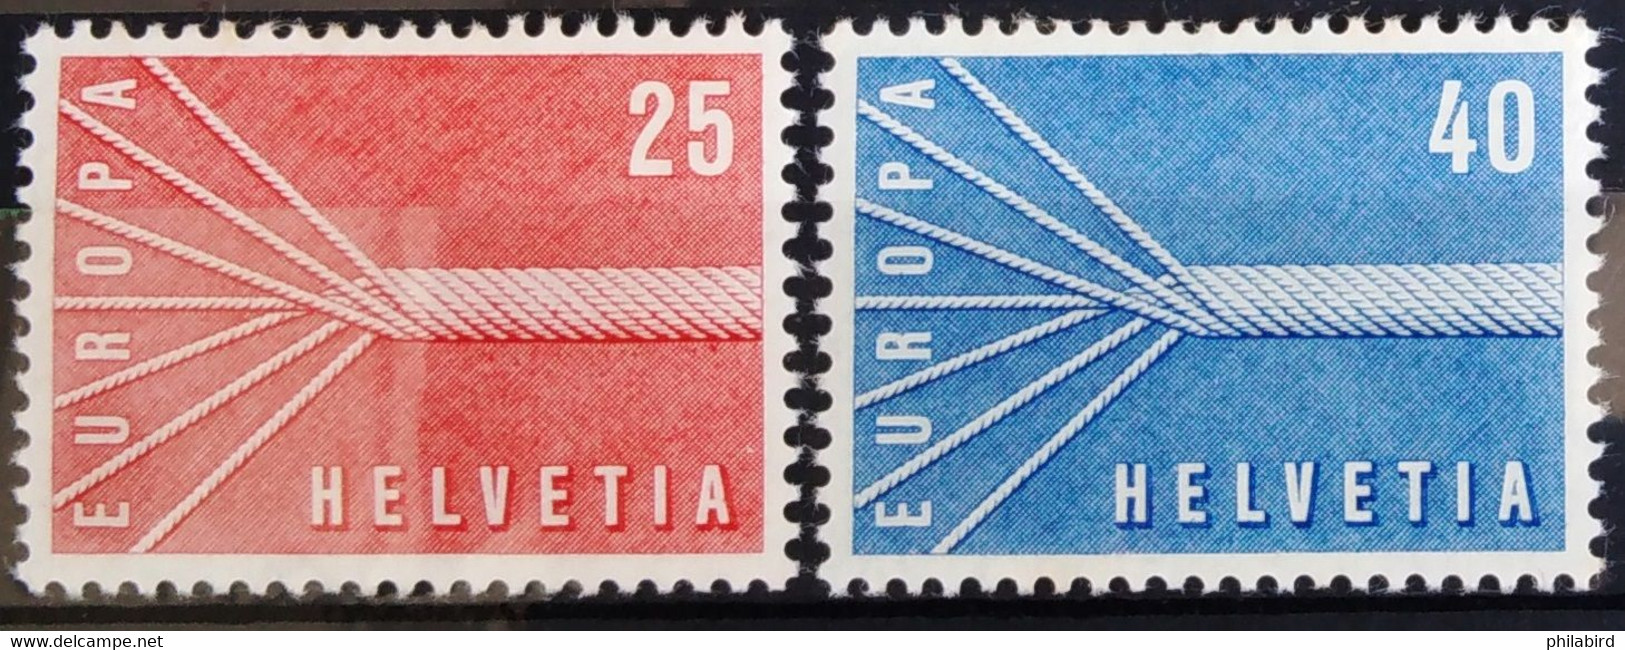 EUROPA 1957 - SUISSE                   N° 595/596                       NEUF** - 1957